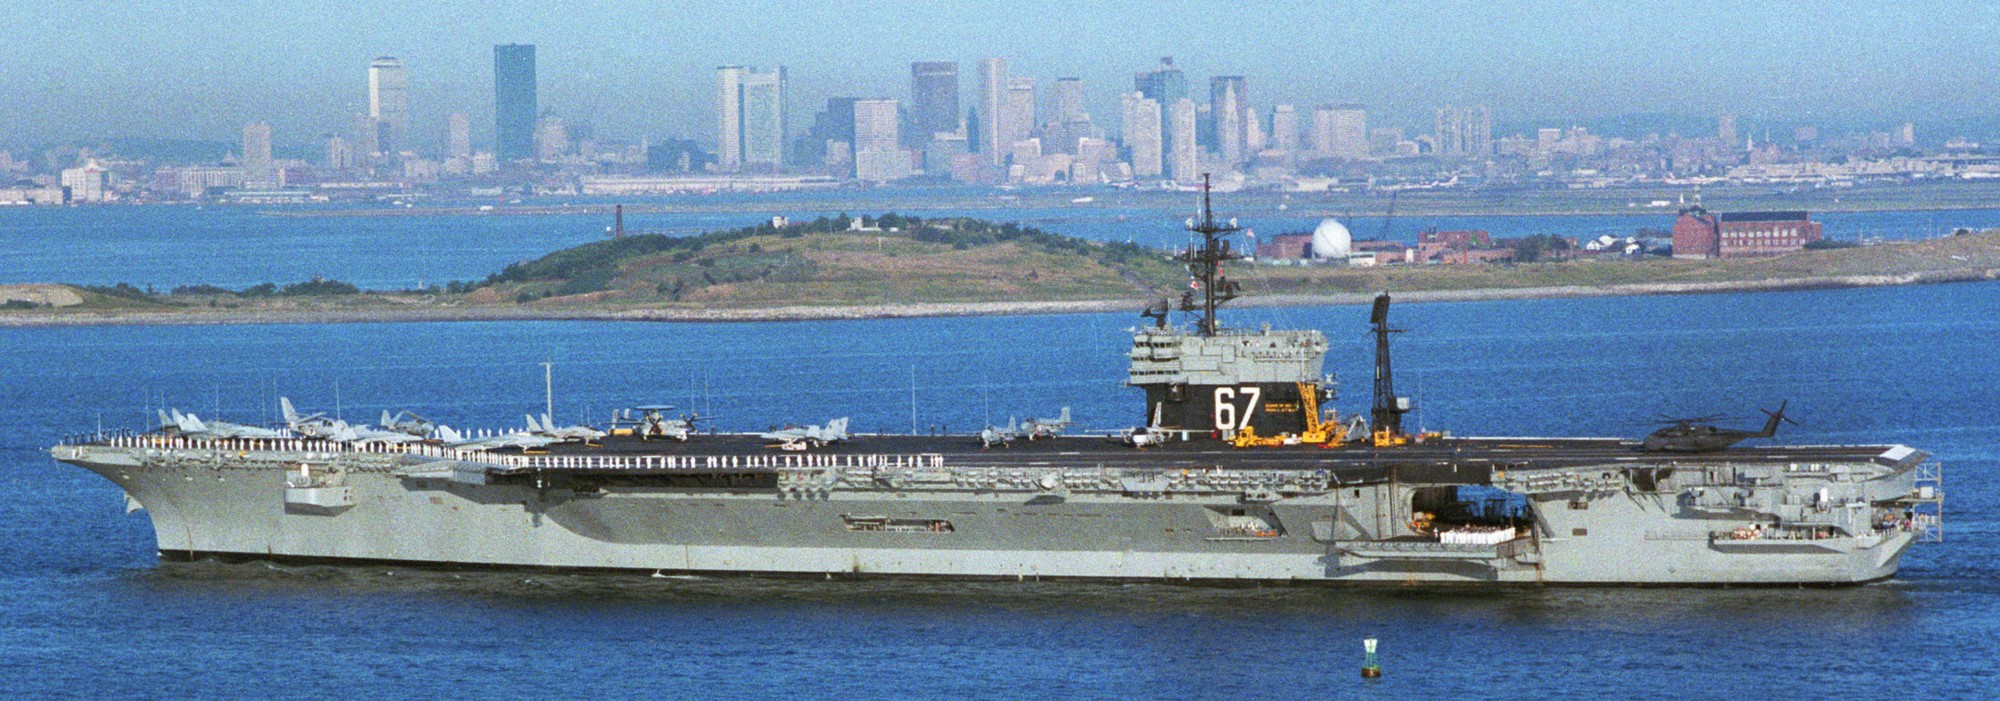 cv-67 uss john f. kennedy aircraft carrier us navy 104